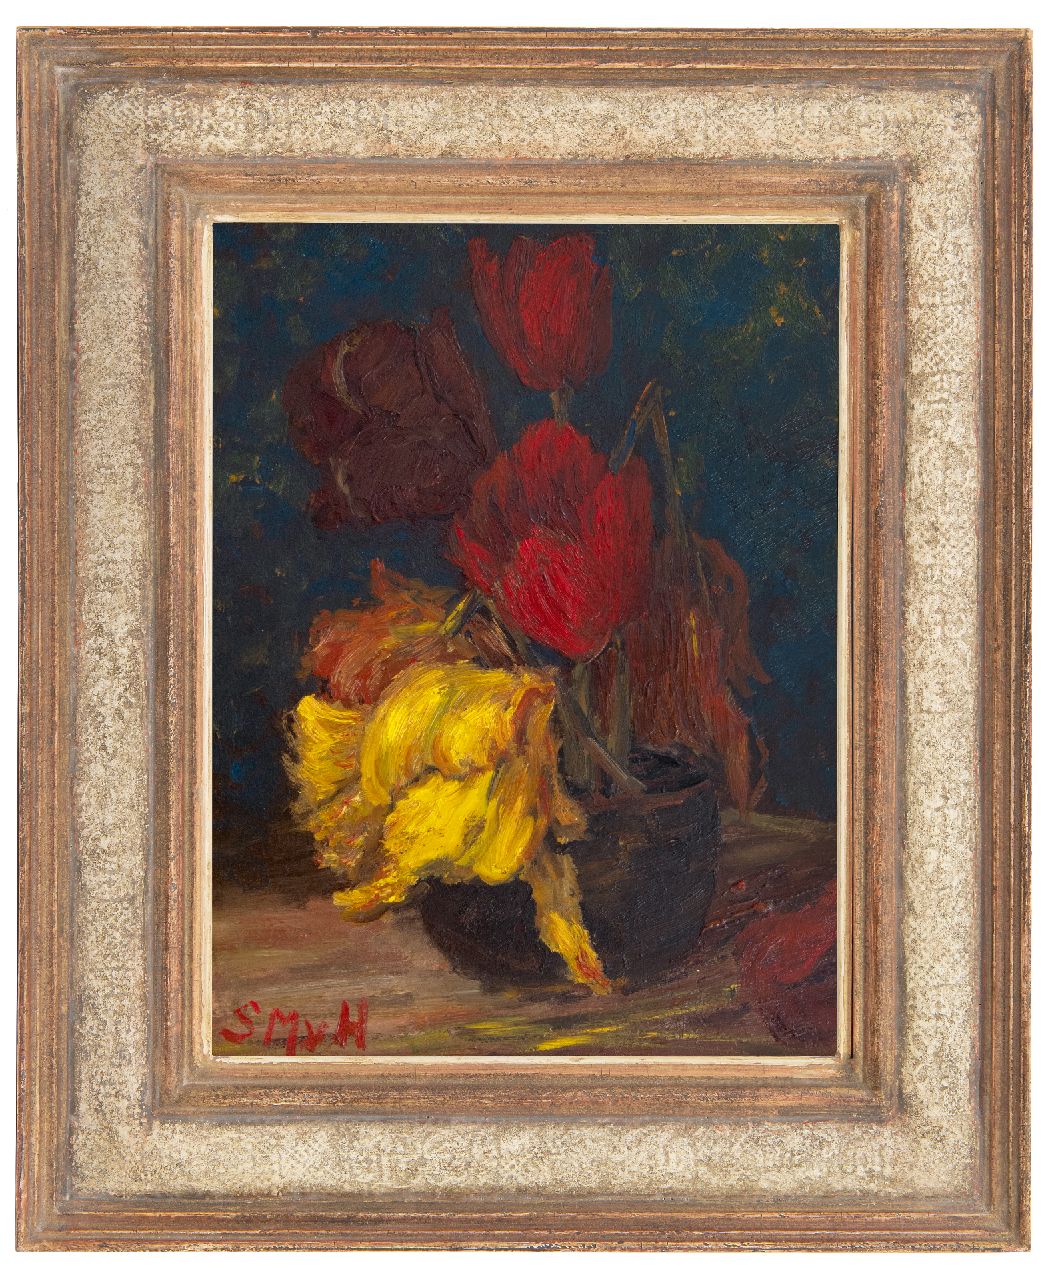 Mesdag-van Houten S.  | Sina 'Sientje' Mesdag-van Houten, Tulips in a vase, oil on panel 36.1 x 27.3 cm, signed l.l. with initials